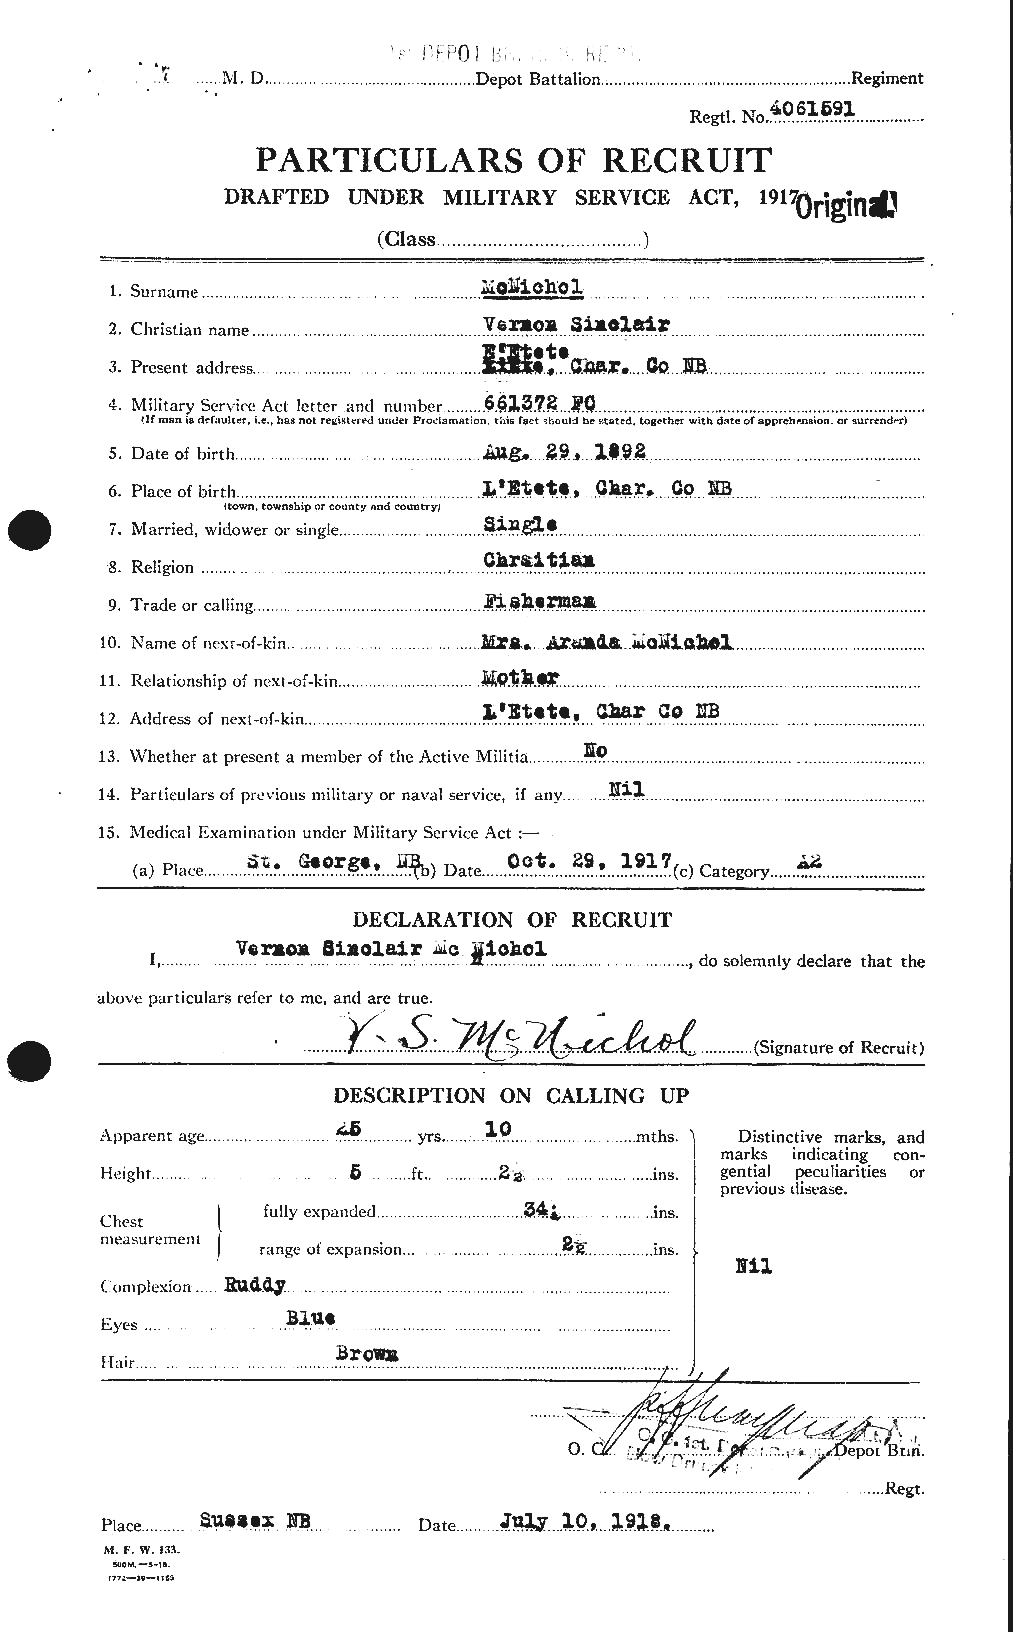 Dossiers du Personnel de la Première Guerre mondiale - CEC 539171a